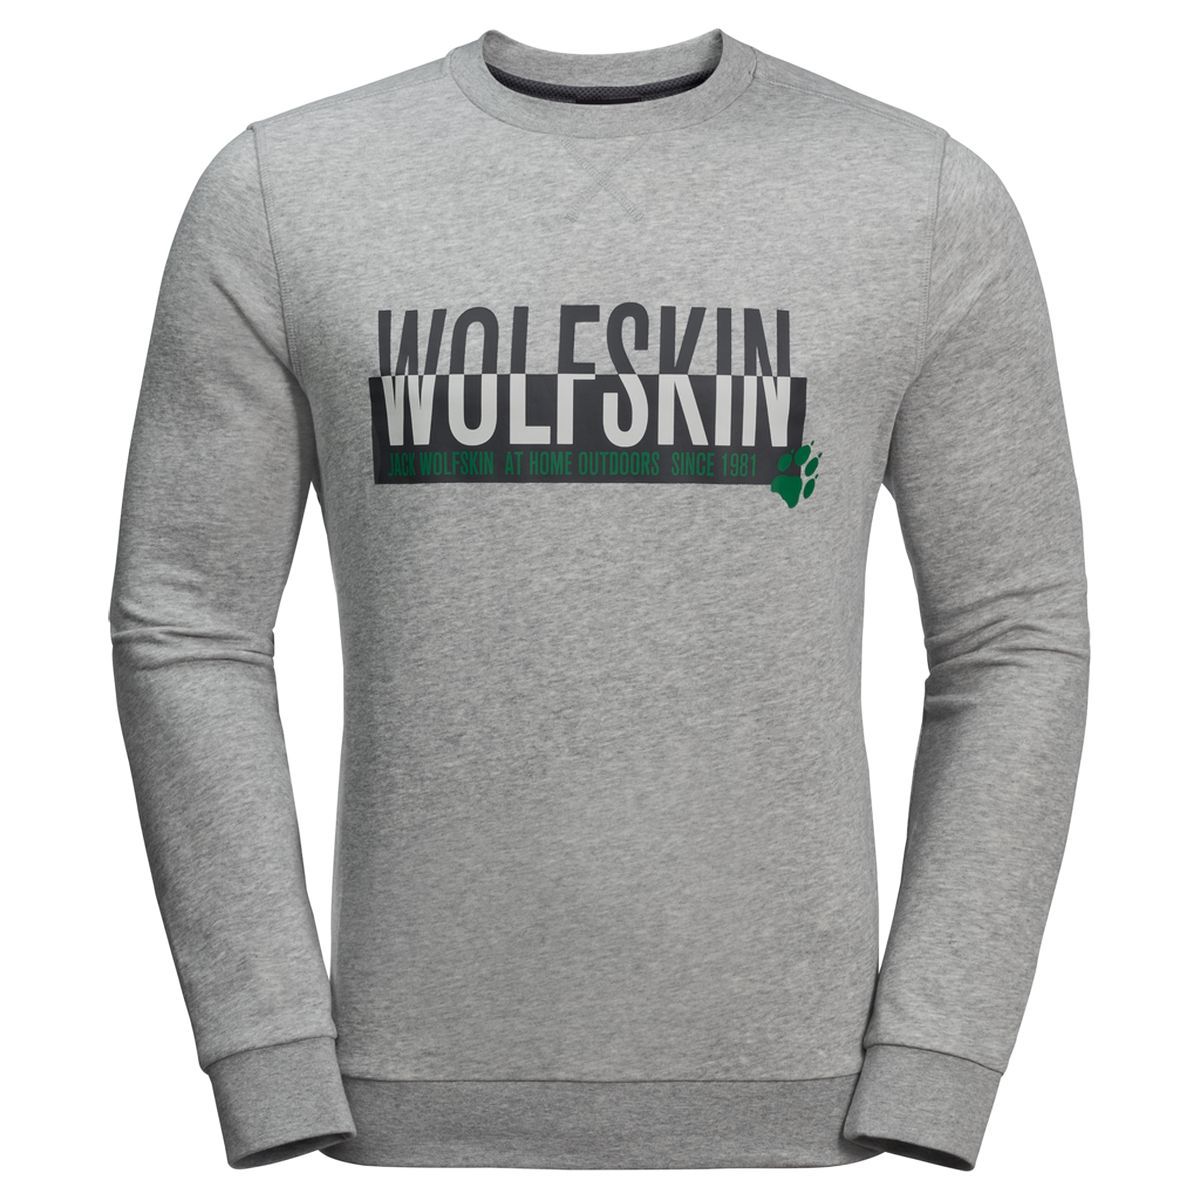   Jack Wolfskin Slogan Sweatshirt M, : -. 1707391-6111.  XL (52)